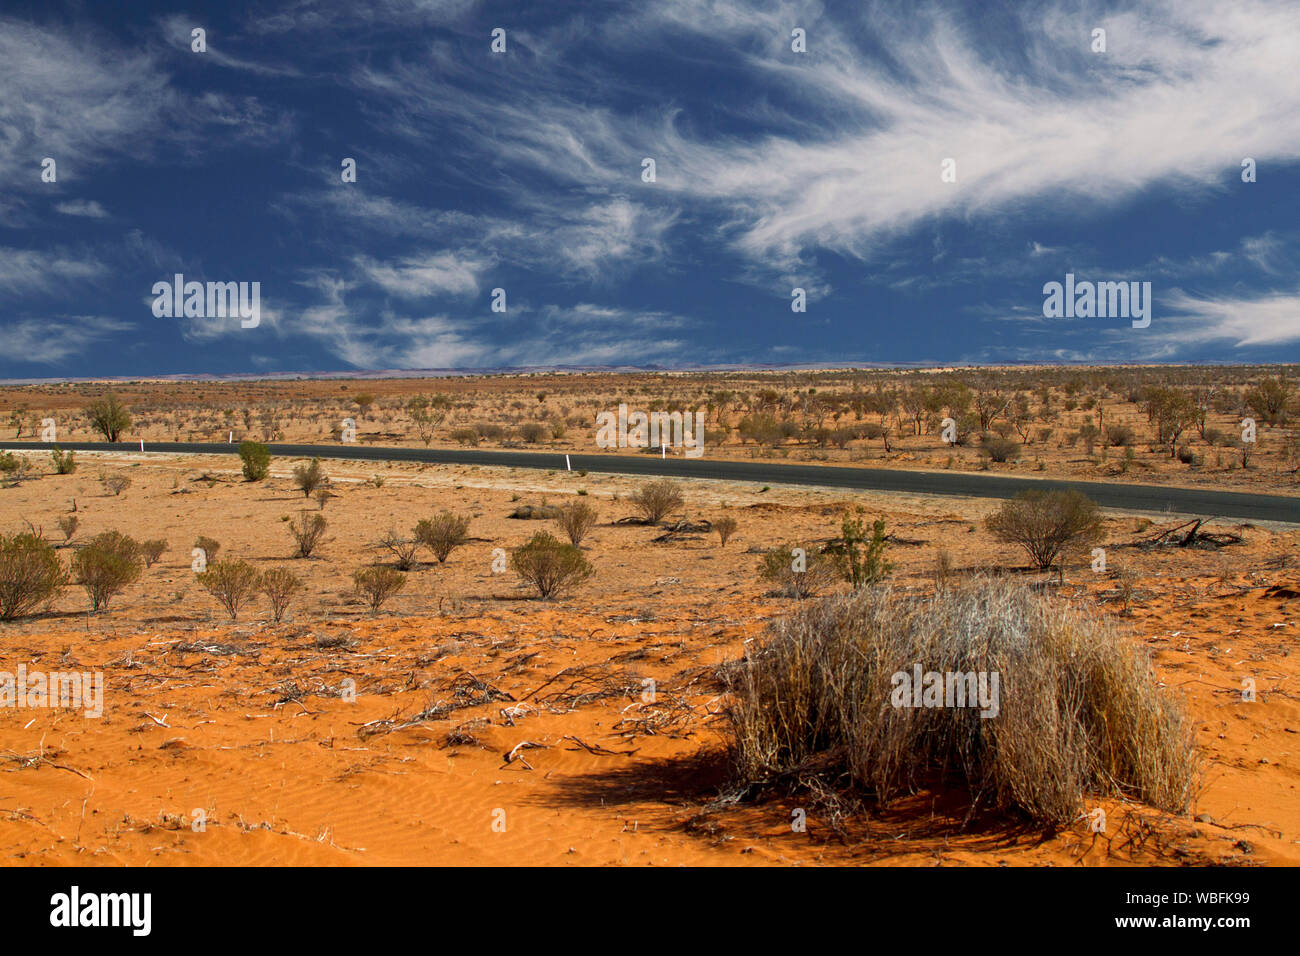 Strada che spazia su tutta la vasta red outback australiano pianure con dispersione di bassa vegetazione secca sotto il cielo blu Foto Stock